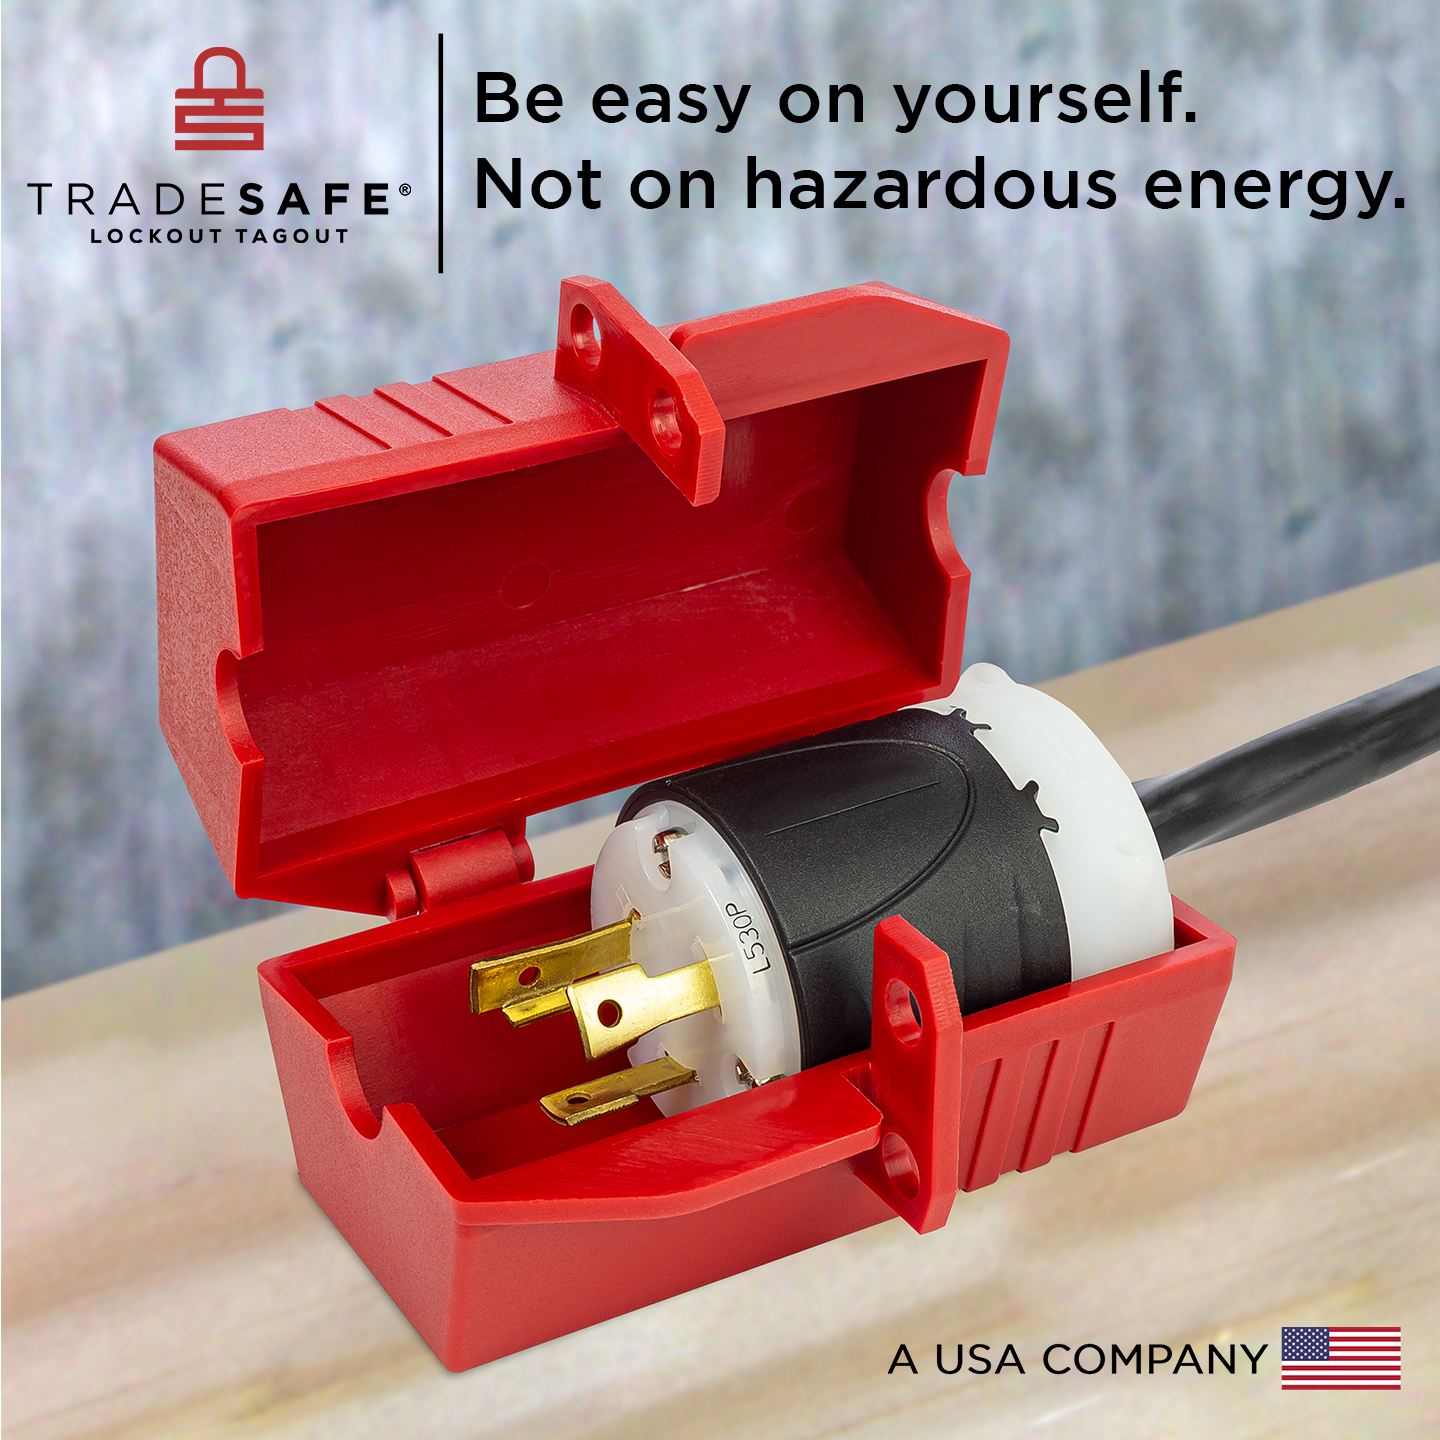 tradesafe: be easy on yourself. not on hazardous energy